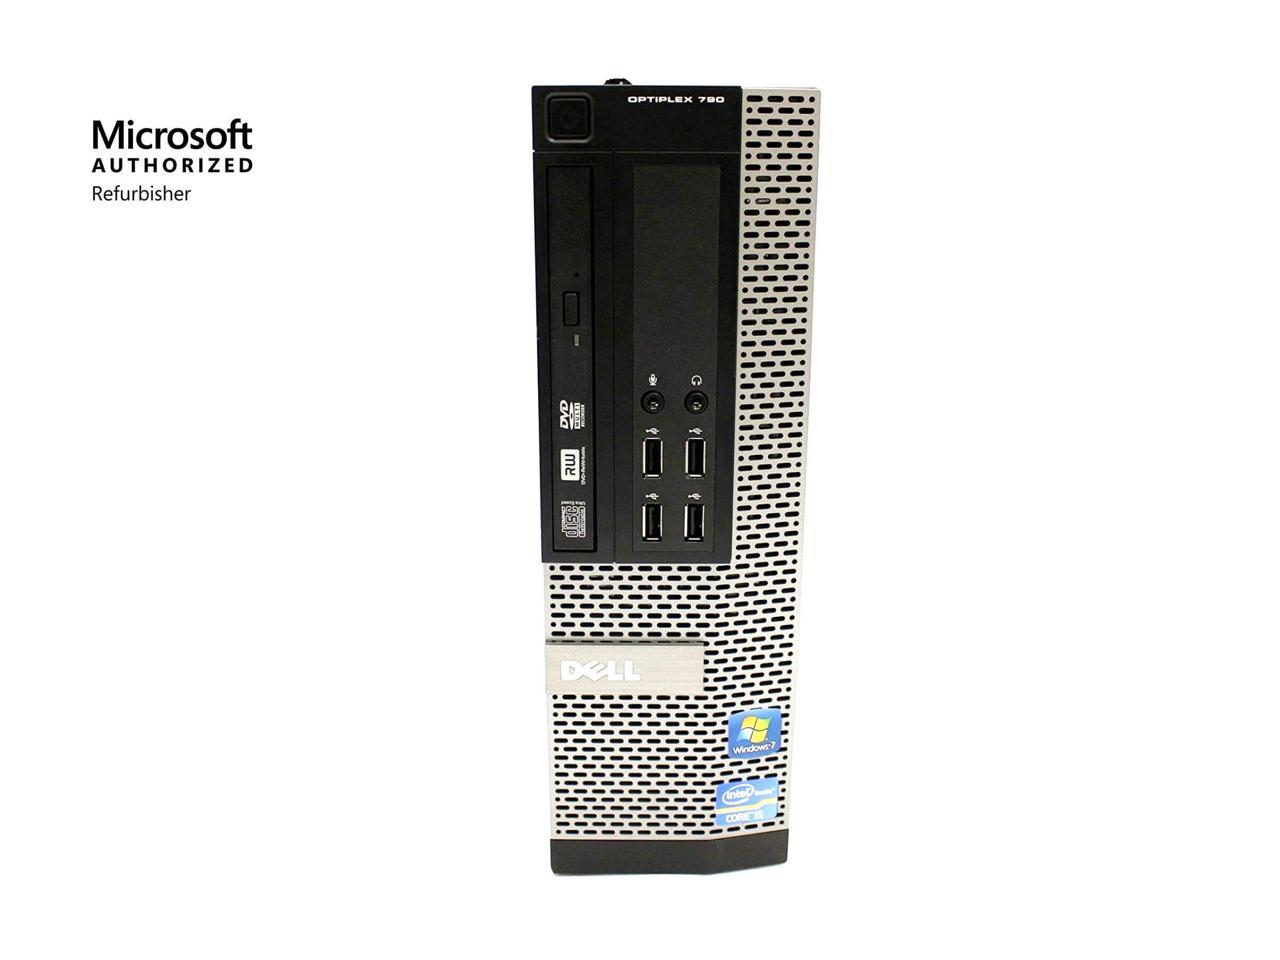 Dell Optiplex 790 SFF PC - Intel Core i5 2400 2nd Gen 3.1 GHz 8GB 500GB HDD Windows 10 Pro 64-Bit